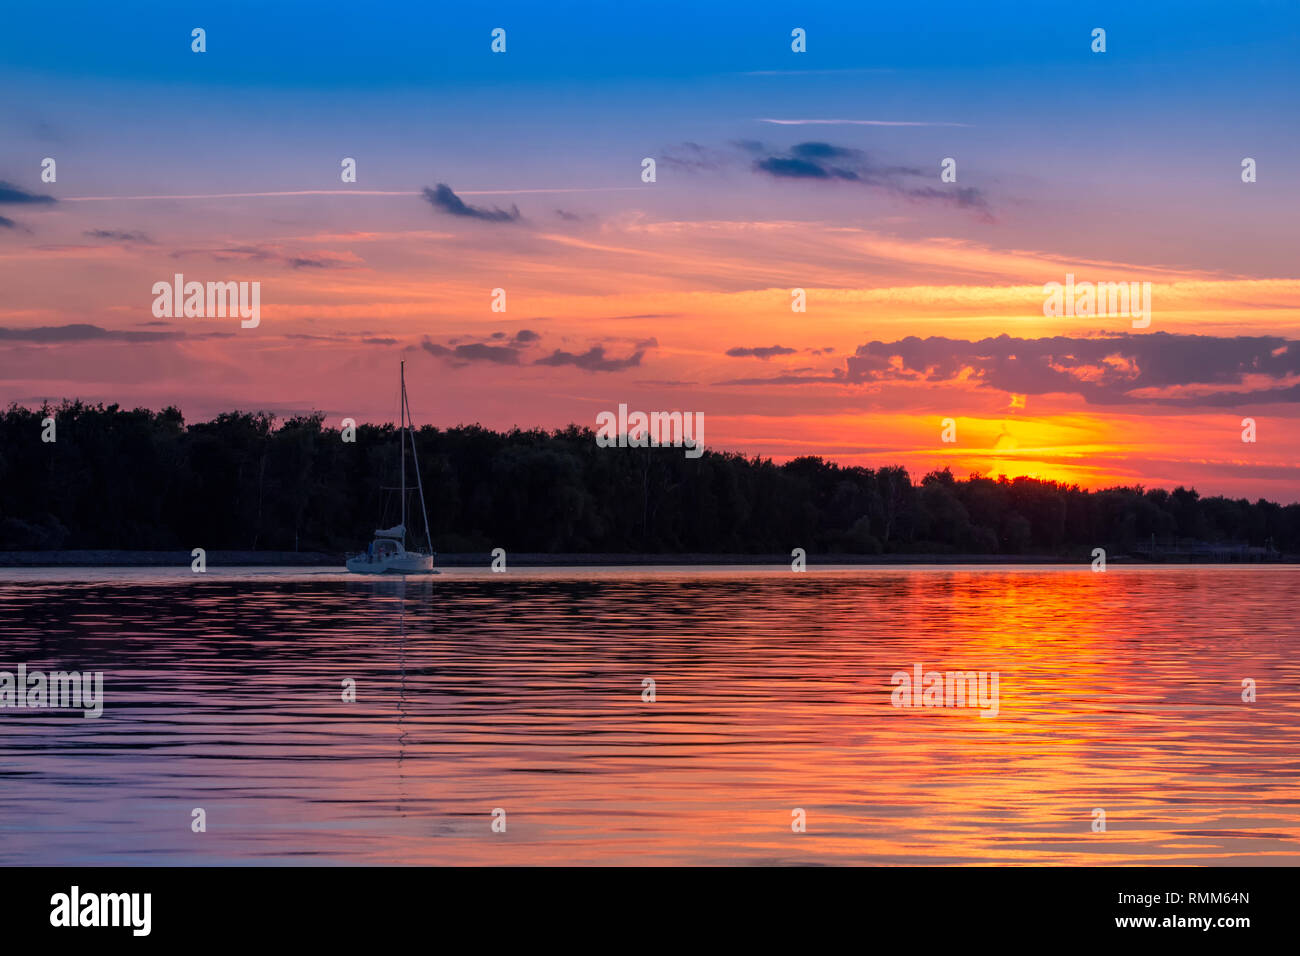 Yacht sailing on sunset, sunrise Stock Photo